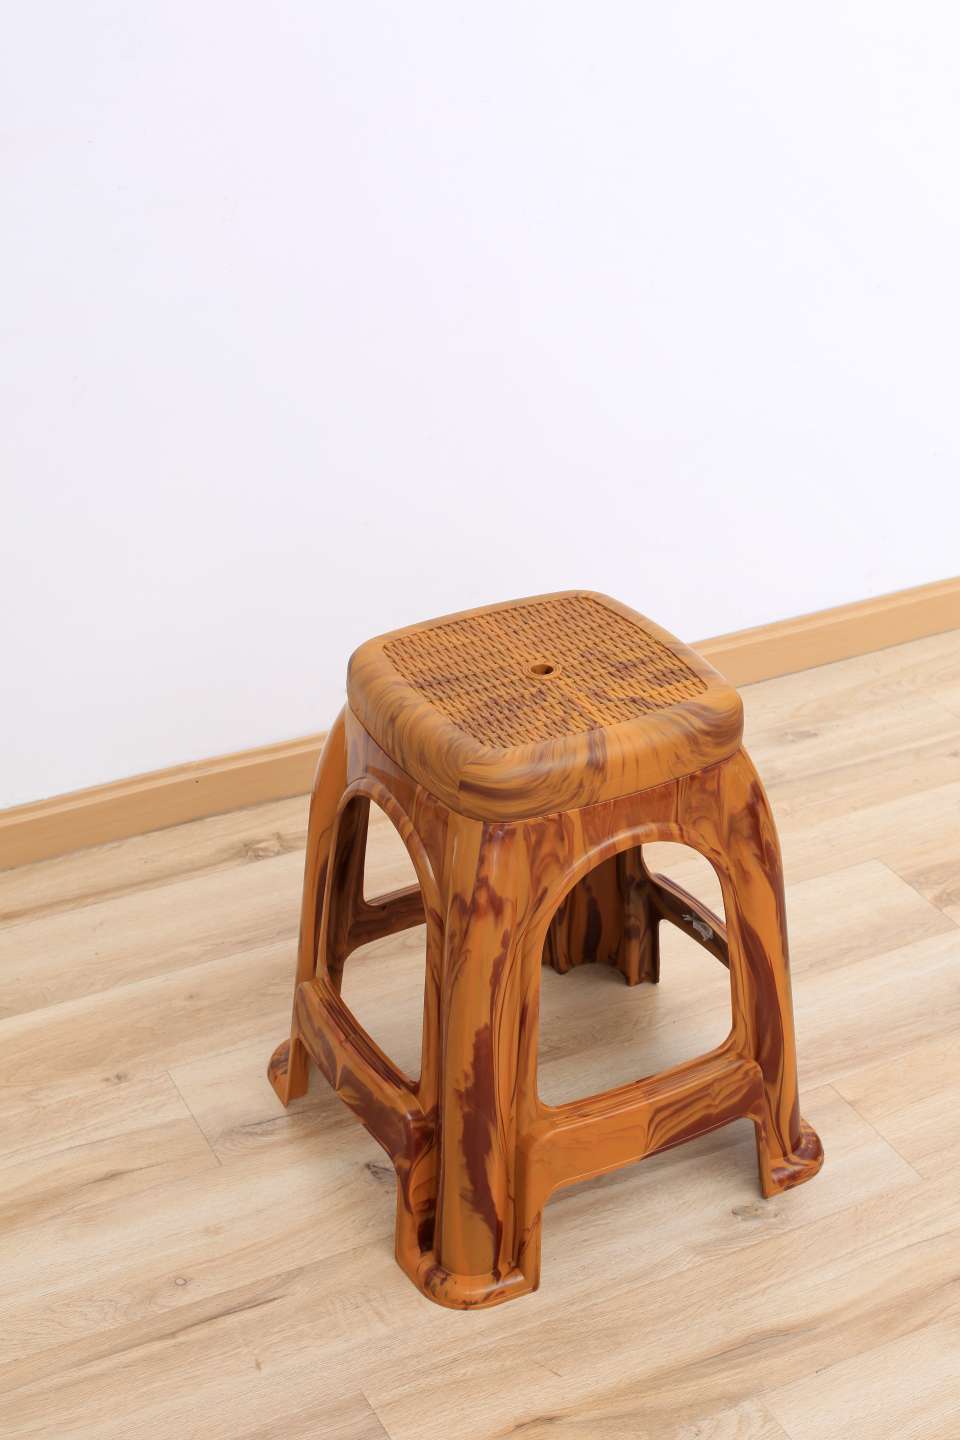 厂家直销仿木纹塑料凳子凳子塑料制品日用品高凳